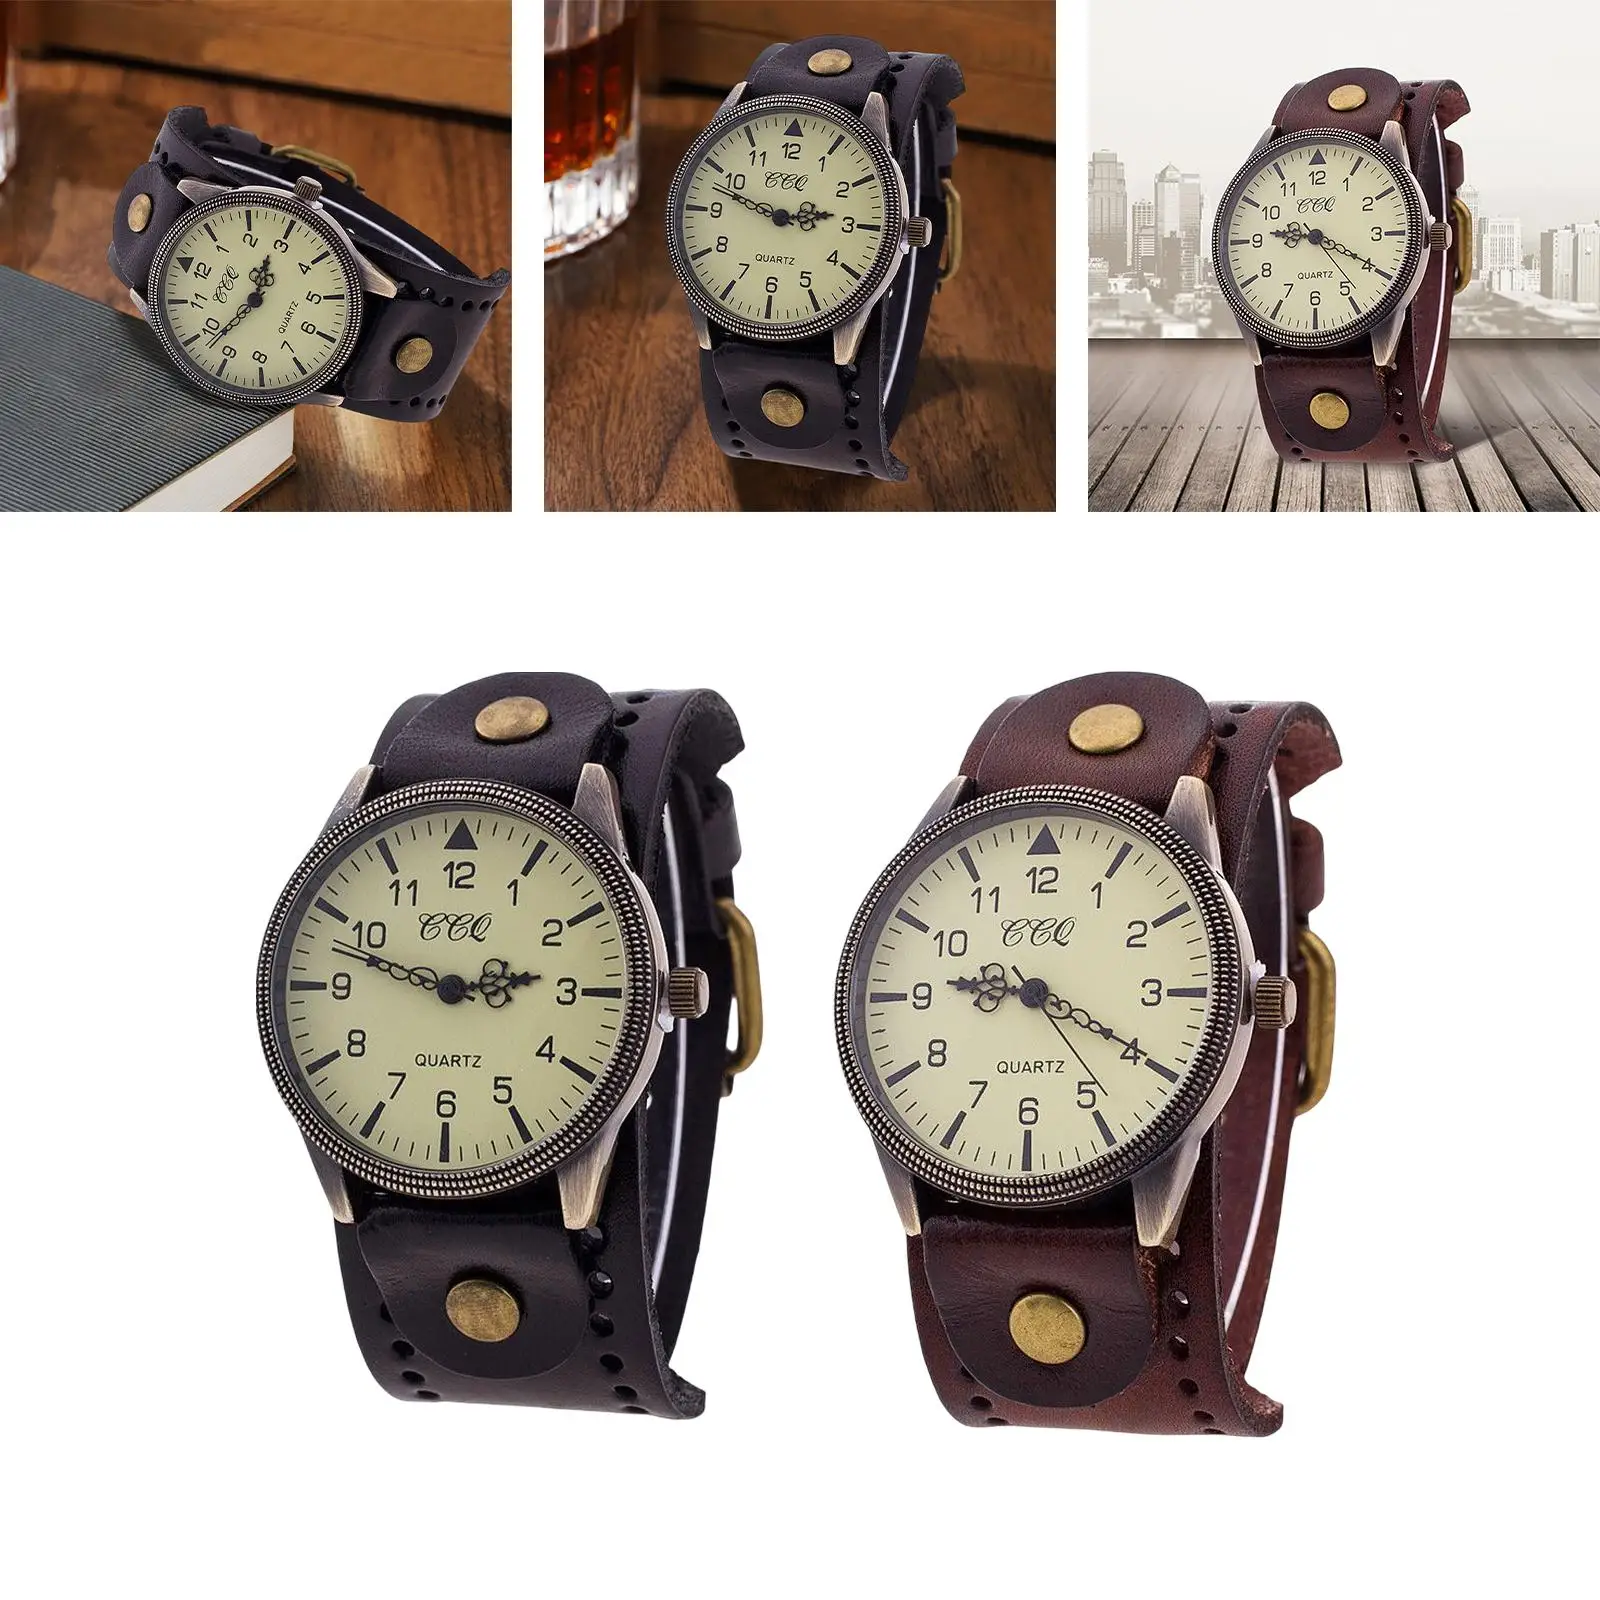 Bracelet Watch PU Leather Male Watch Band Cuff Hybrid Design Wristwatch for Bracelet Watch Band